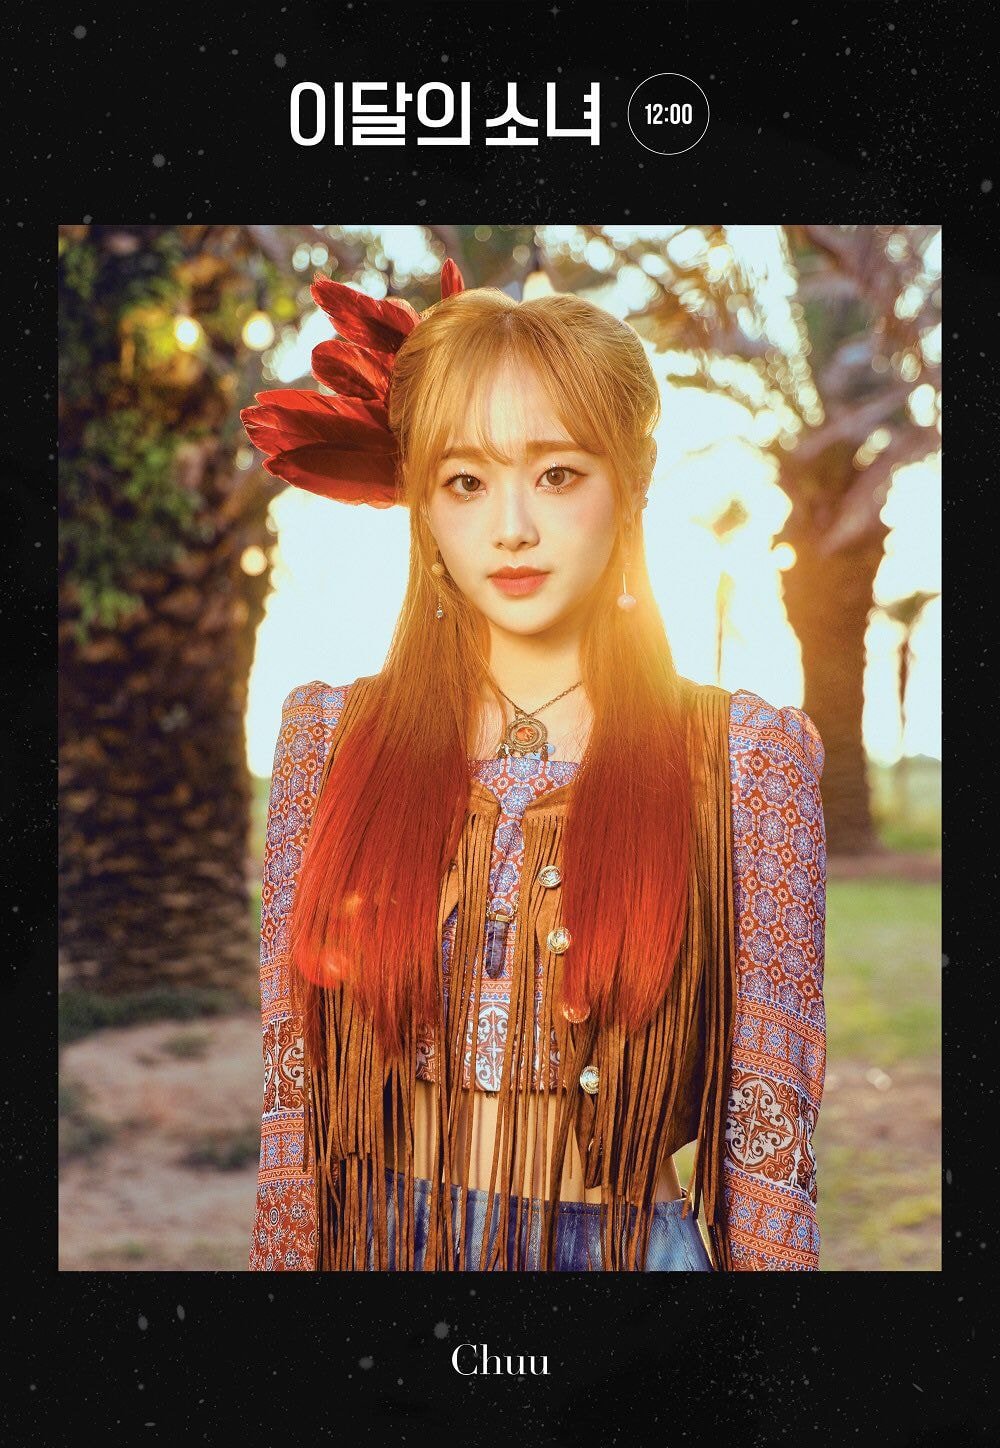 이달의 소녀(LOOПΔ) 3rd Mini Album [12:00] 1st Concept Photo - 츄, 고원, 단체